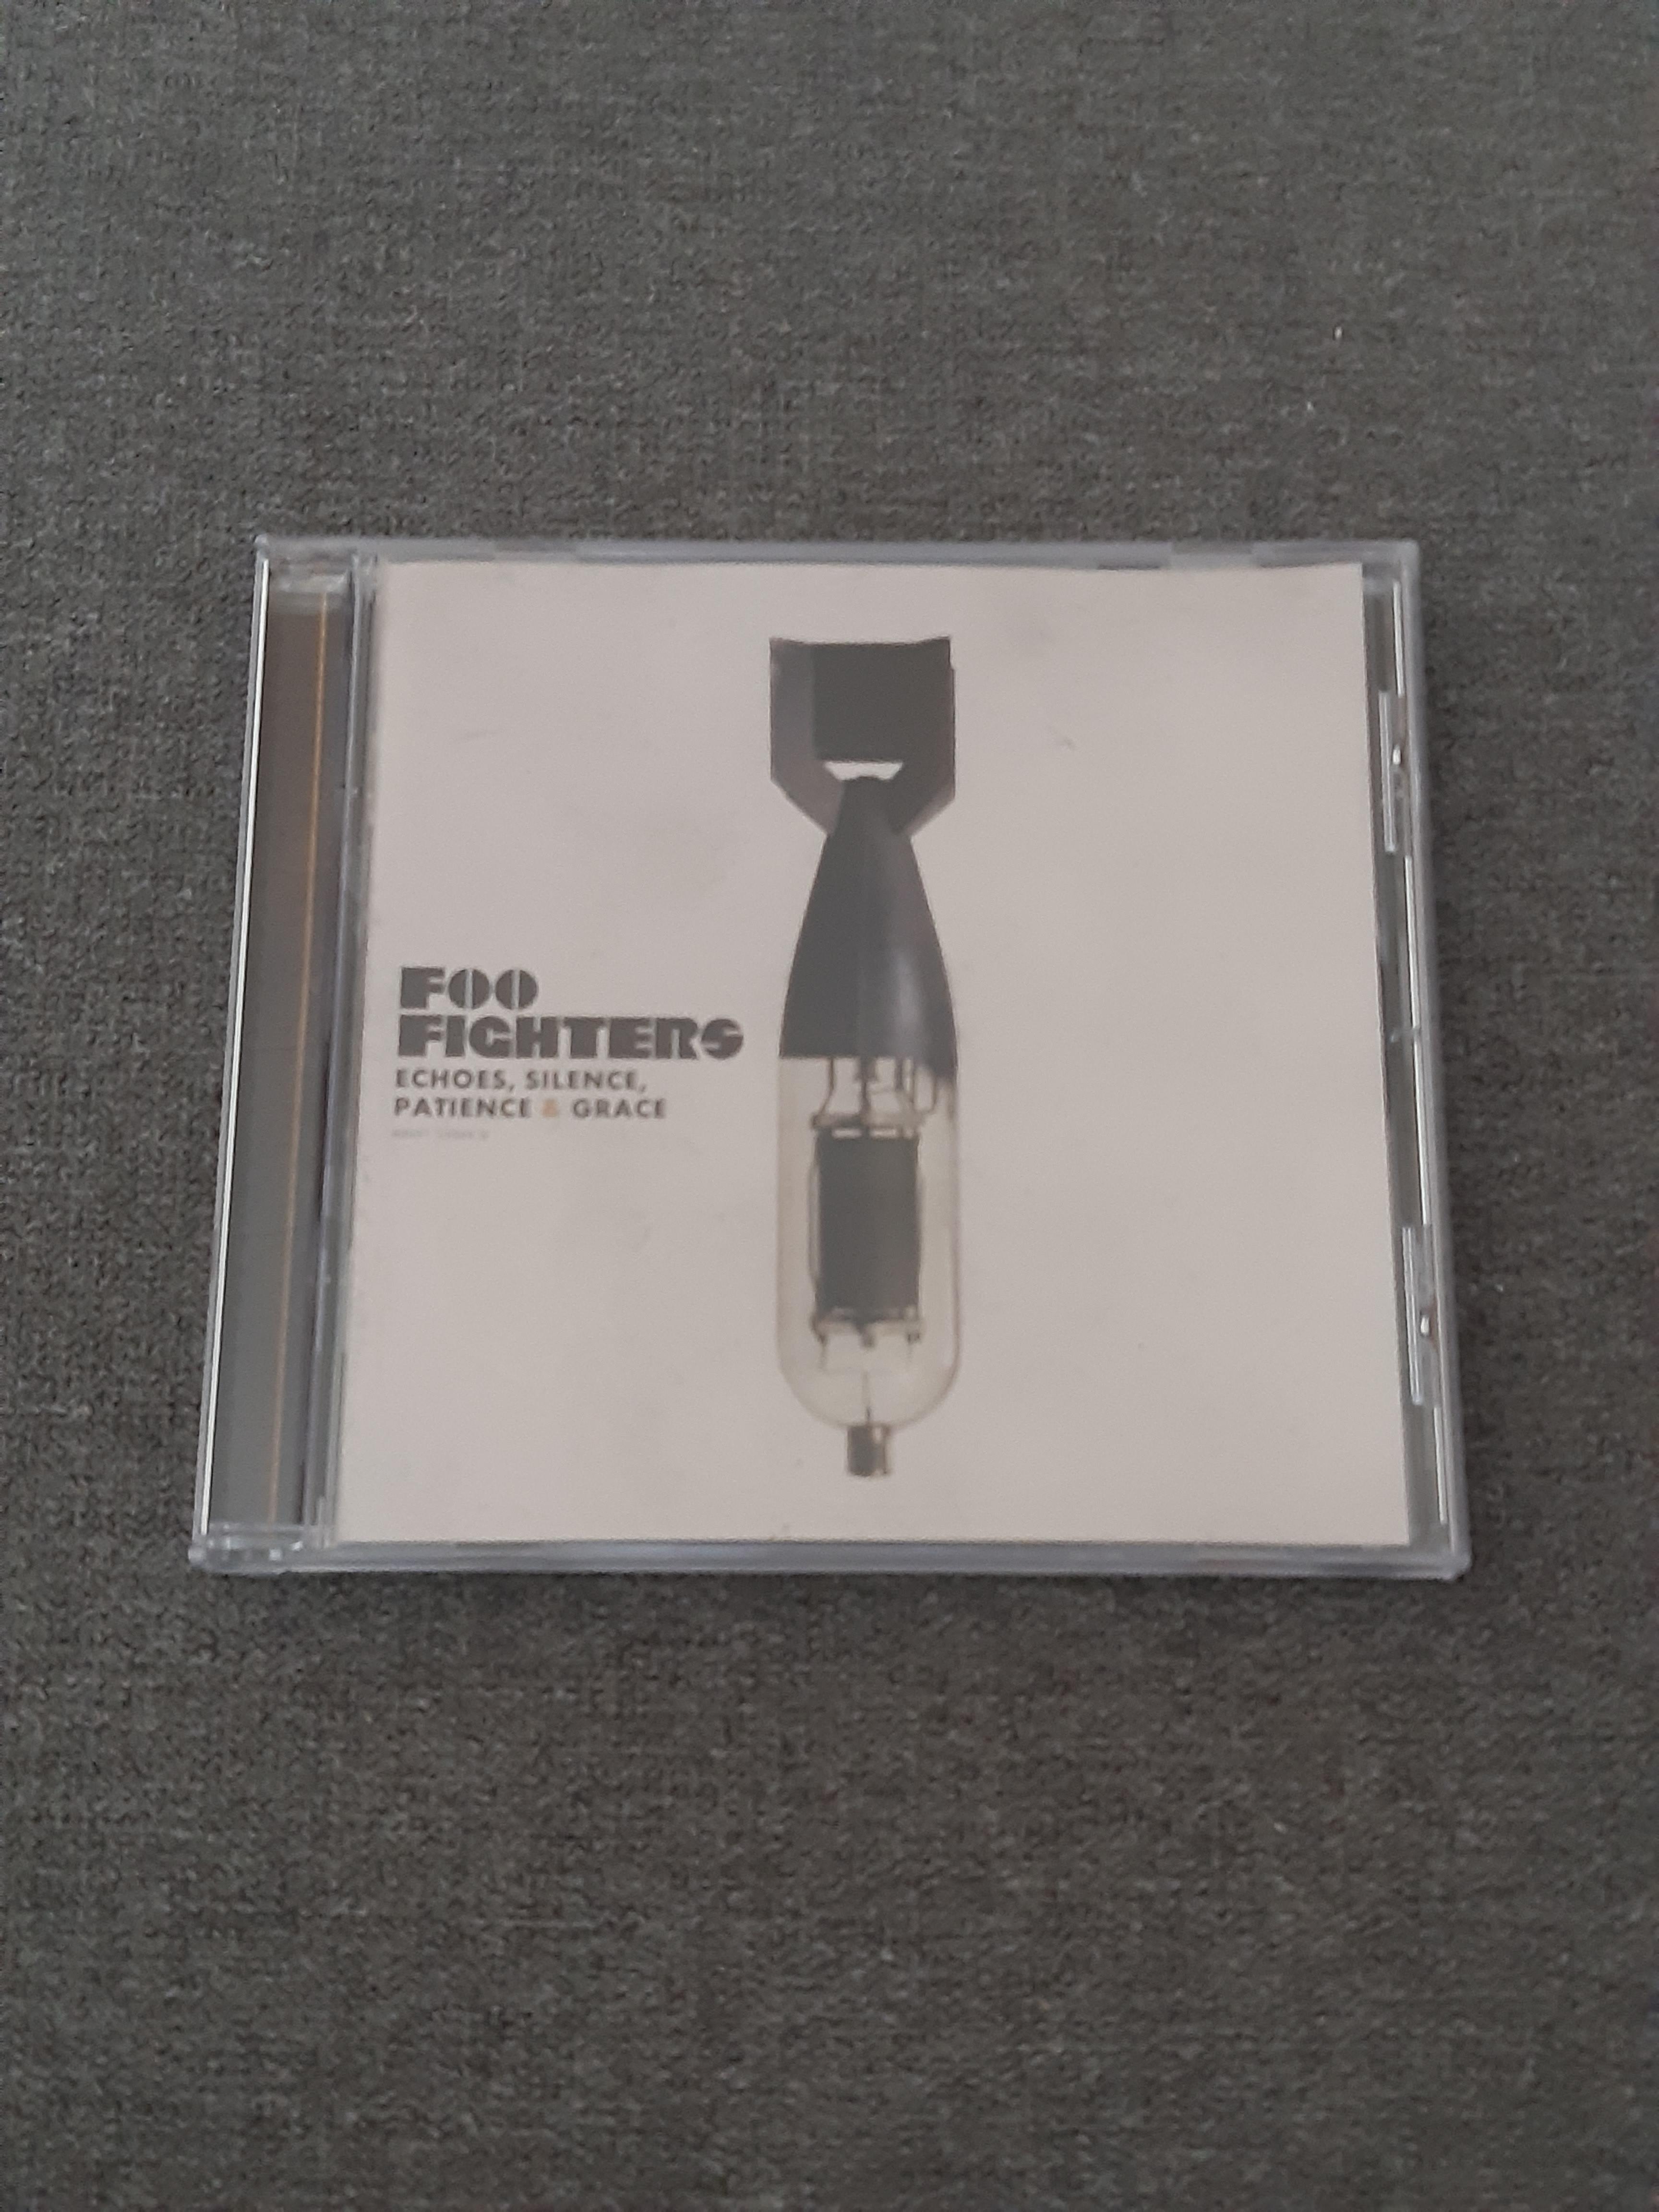 Foo Fighters - Echoes, Silence, Patience & Grace - CD (käytetty)